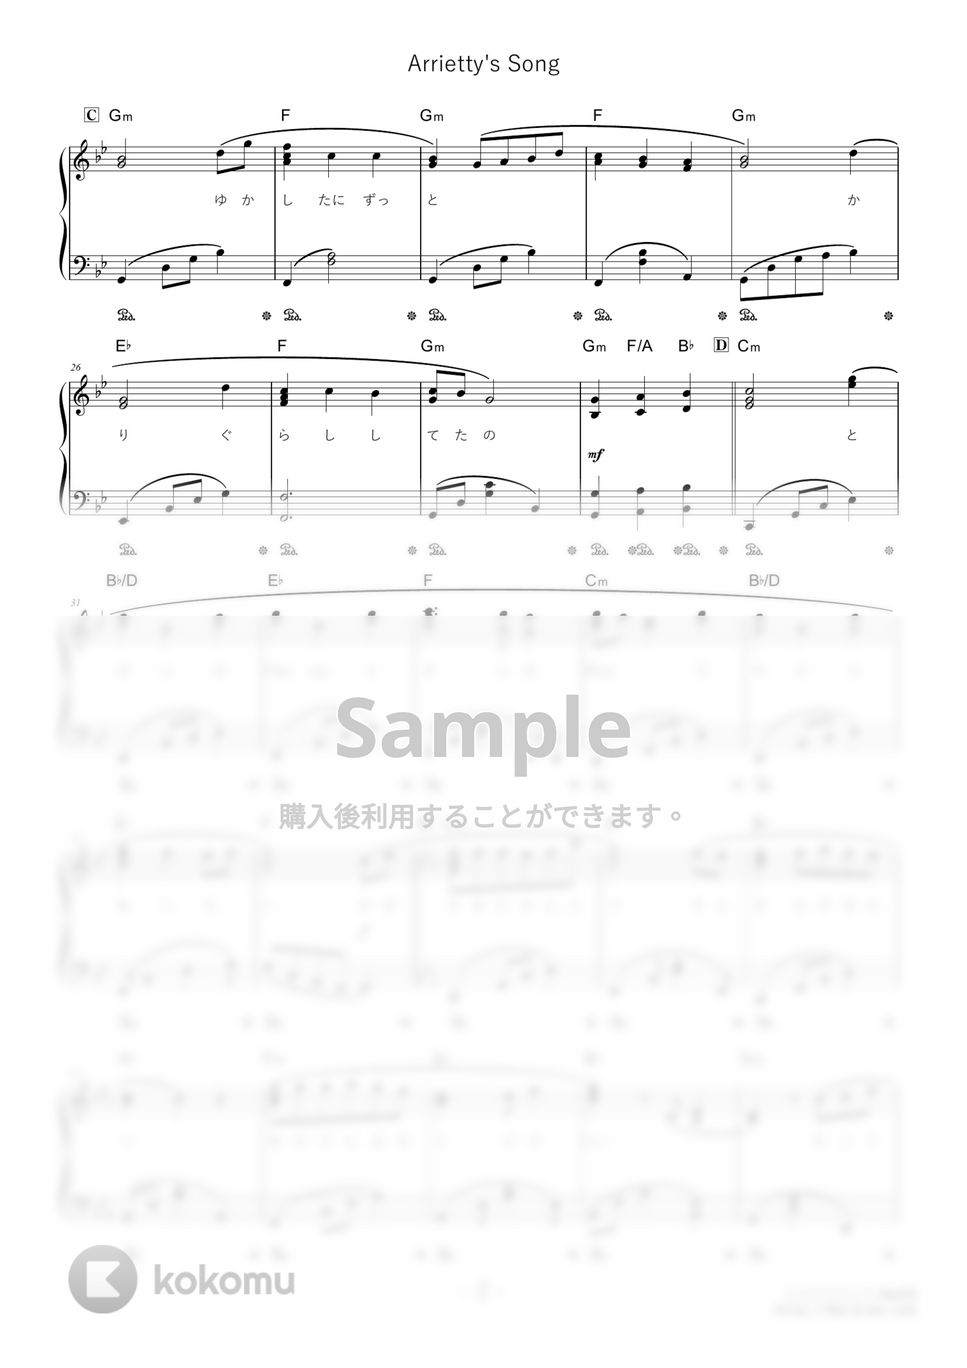 セシル・コルベル - Arrietty's Song (難易度:★★★☆☆/歌詞・コード・ペダル付き) by Dさん